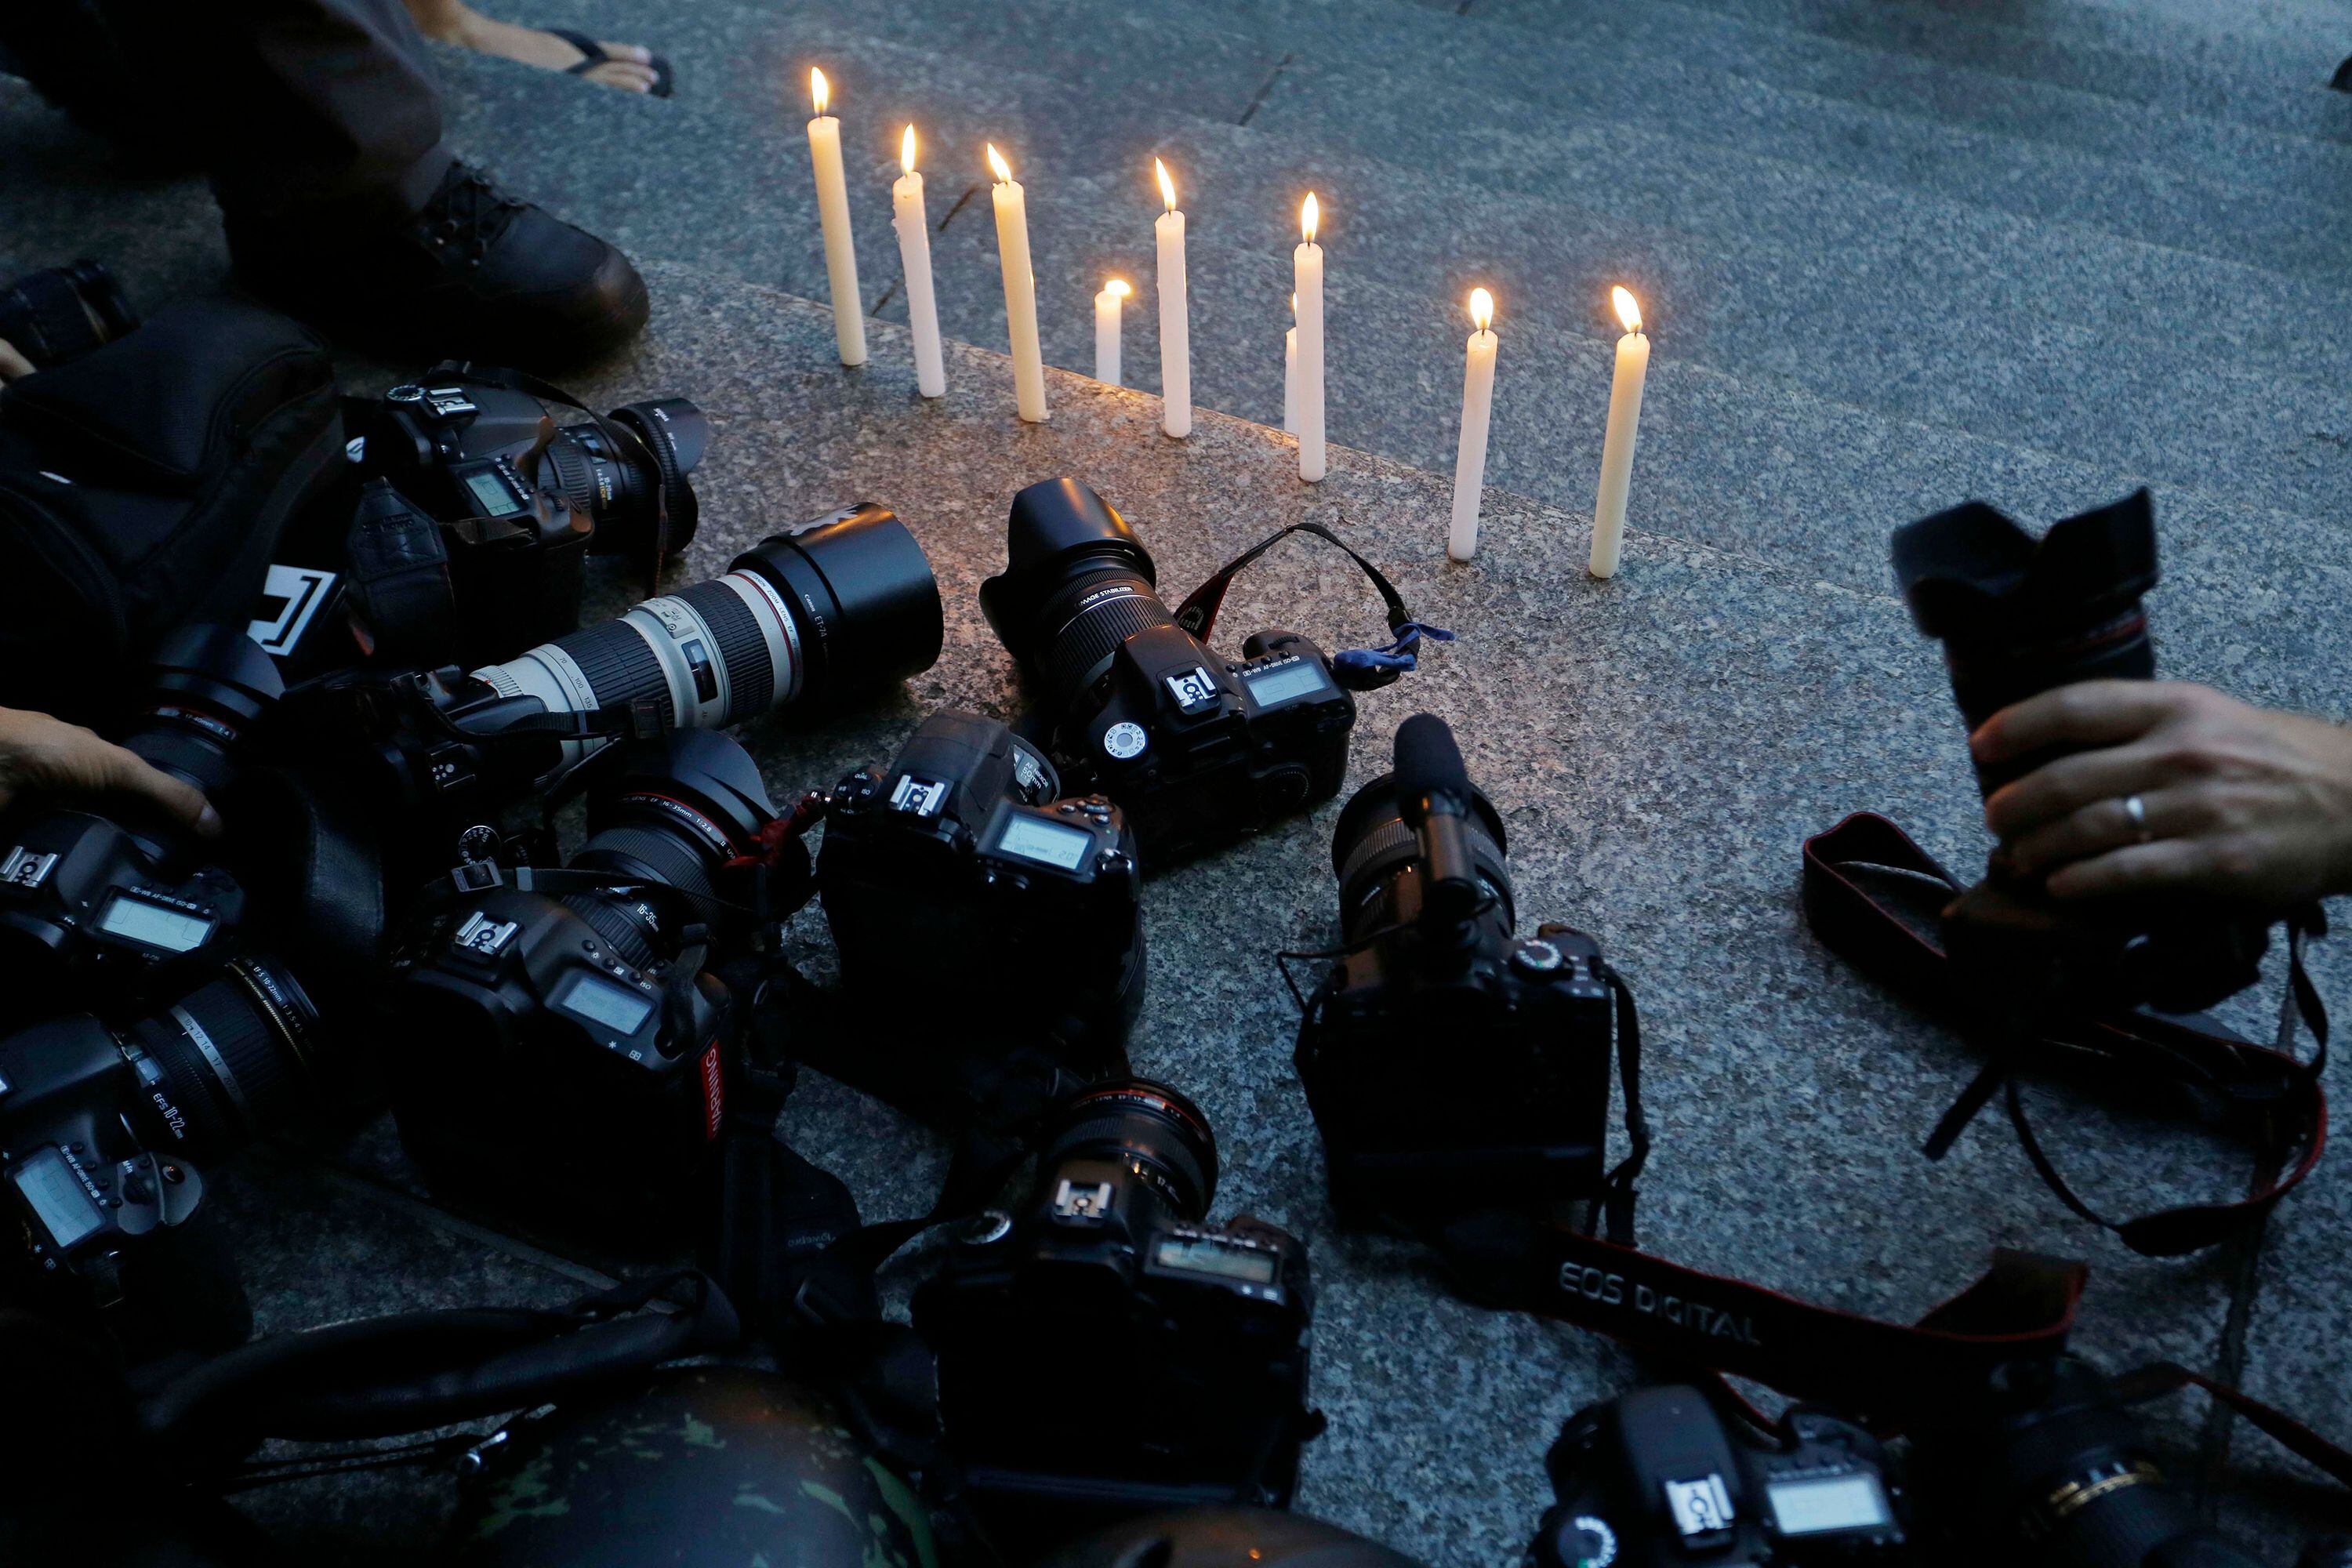 La violencia también toca a los periodistas y fotoperiodistas en América Latina. 